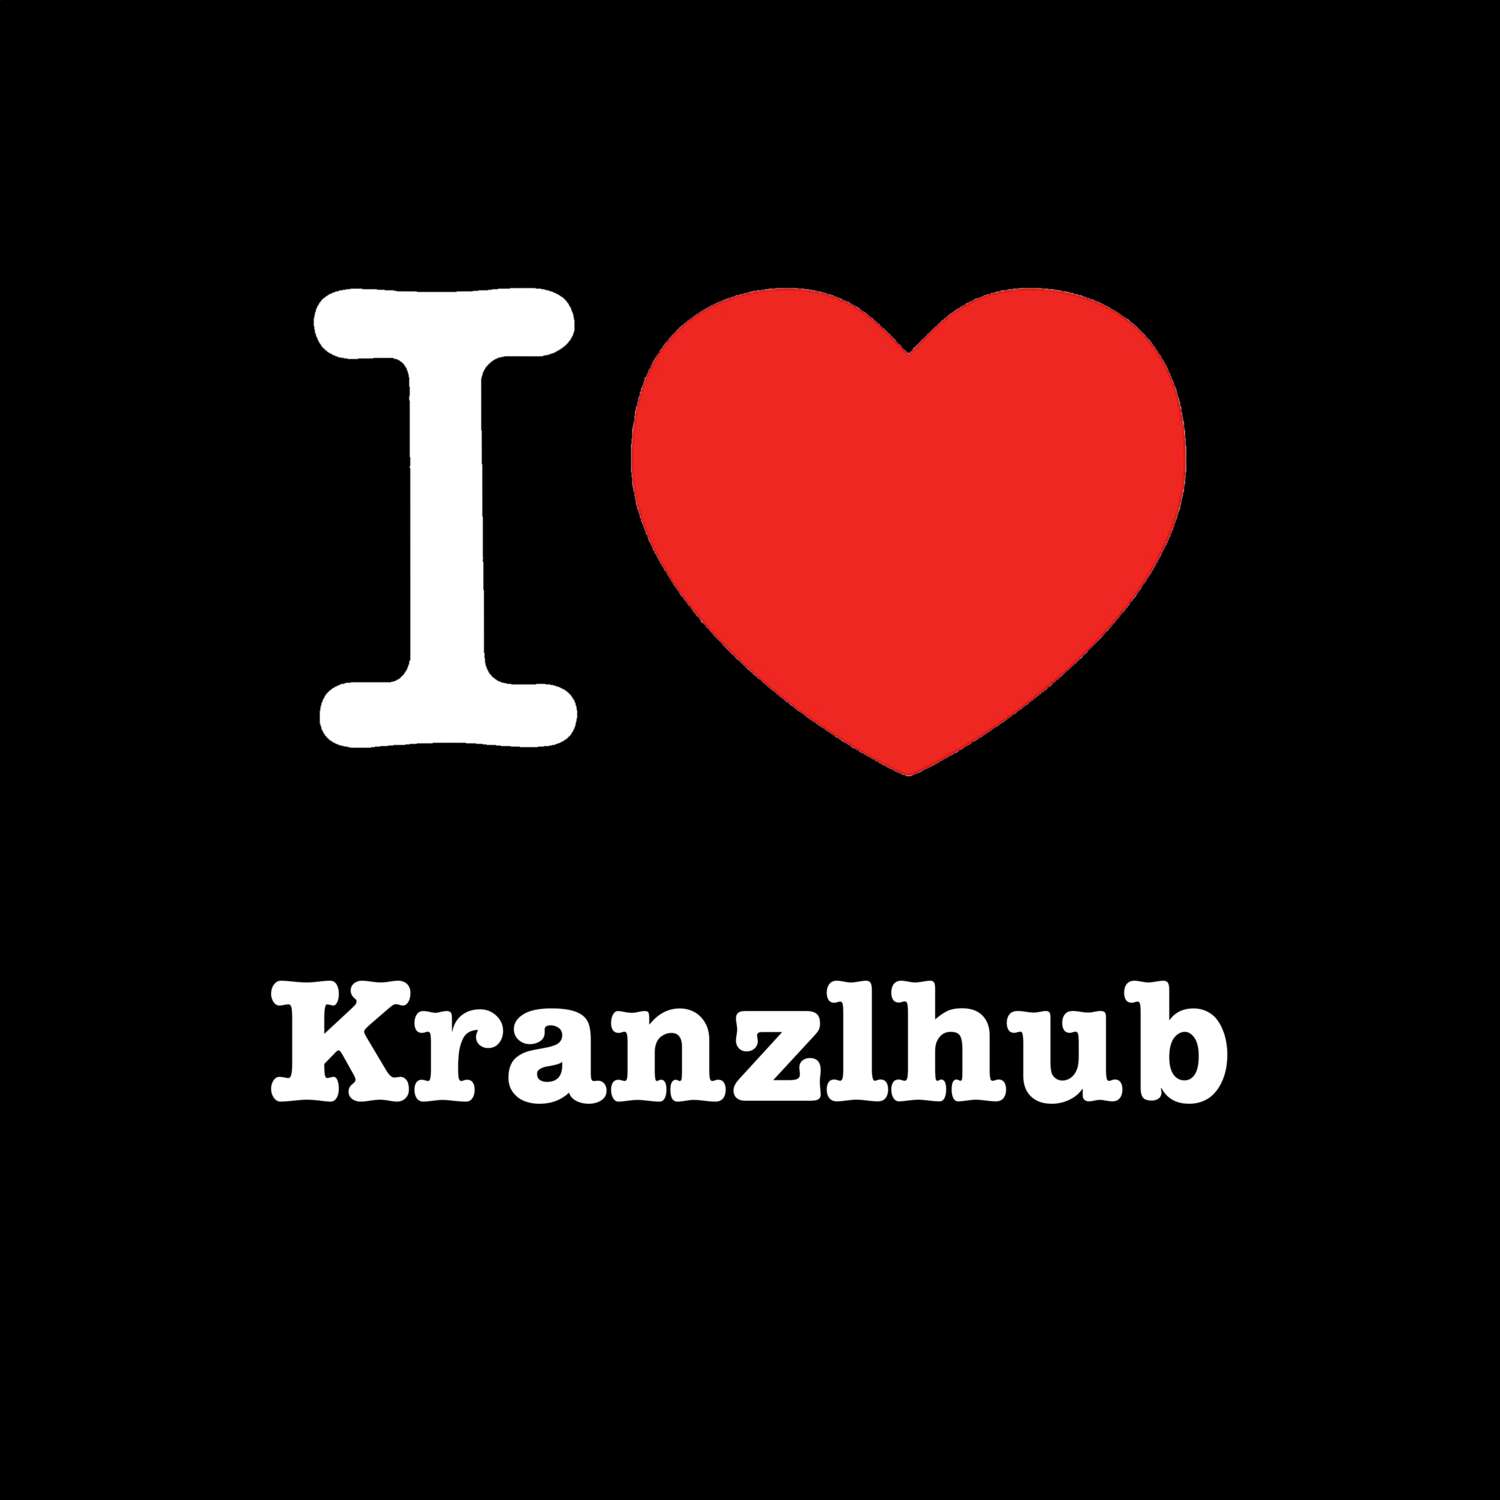 Kranzlhub T-Shirt »I love«